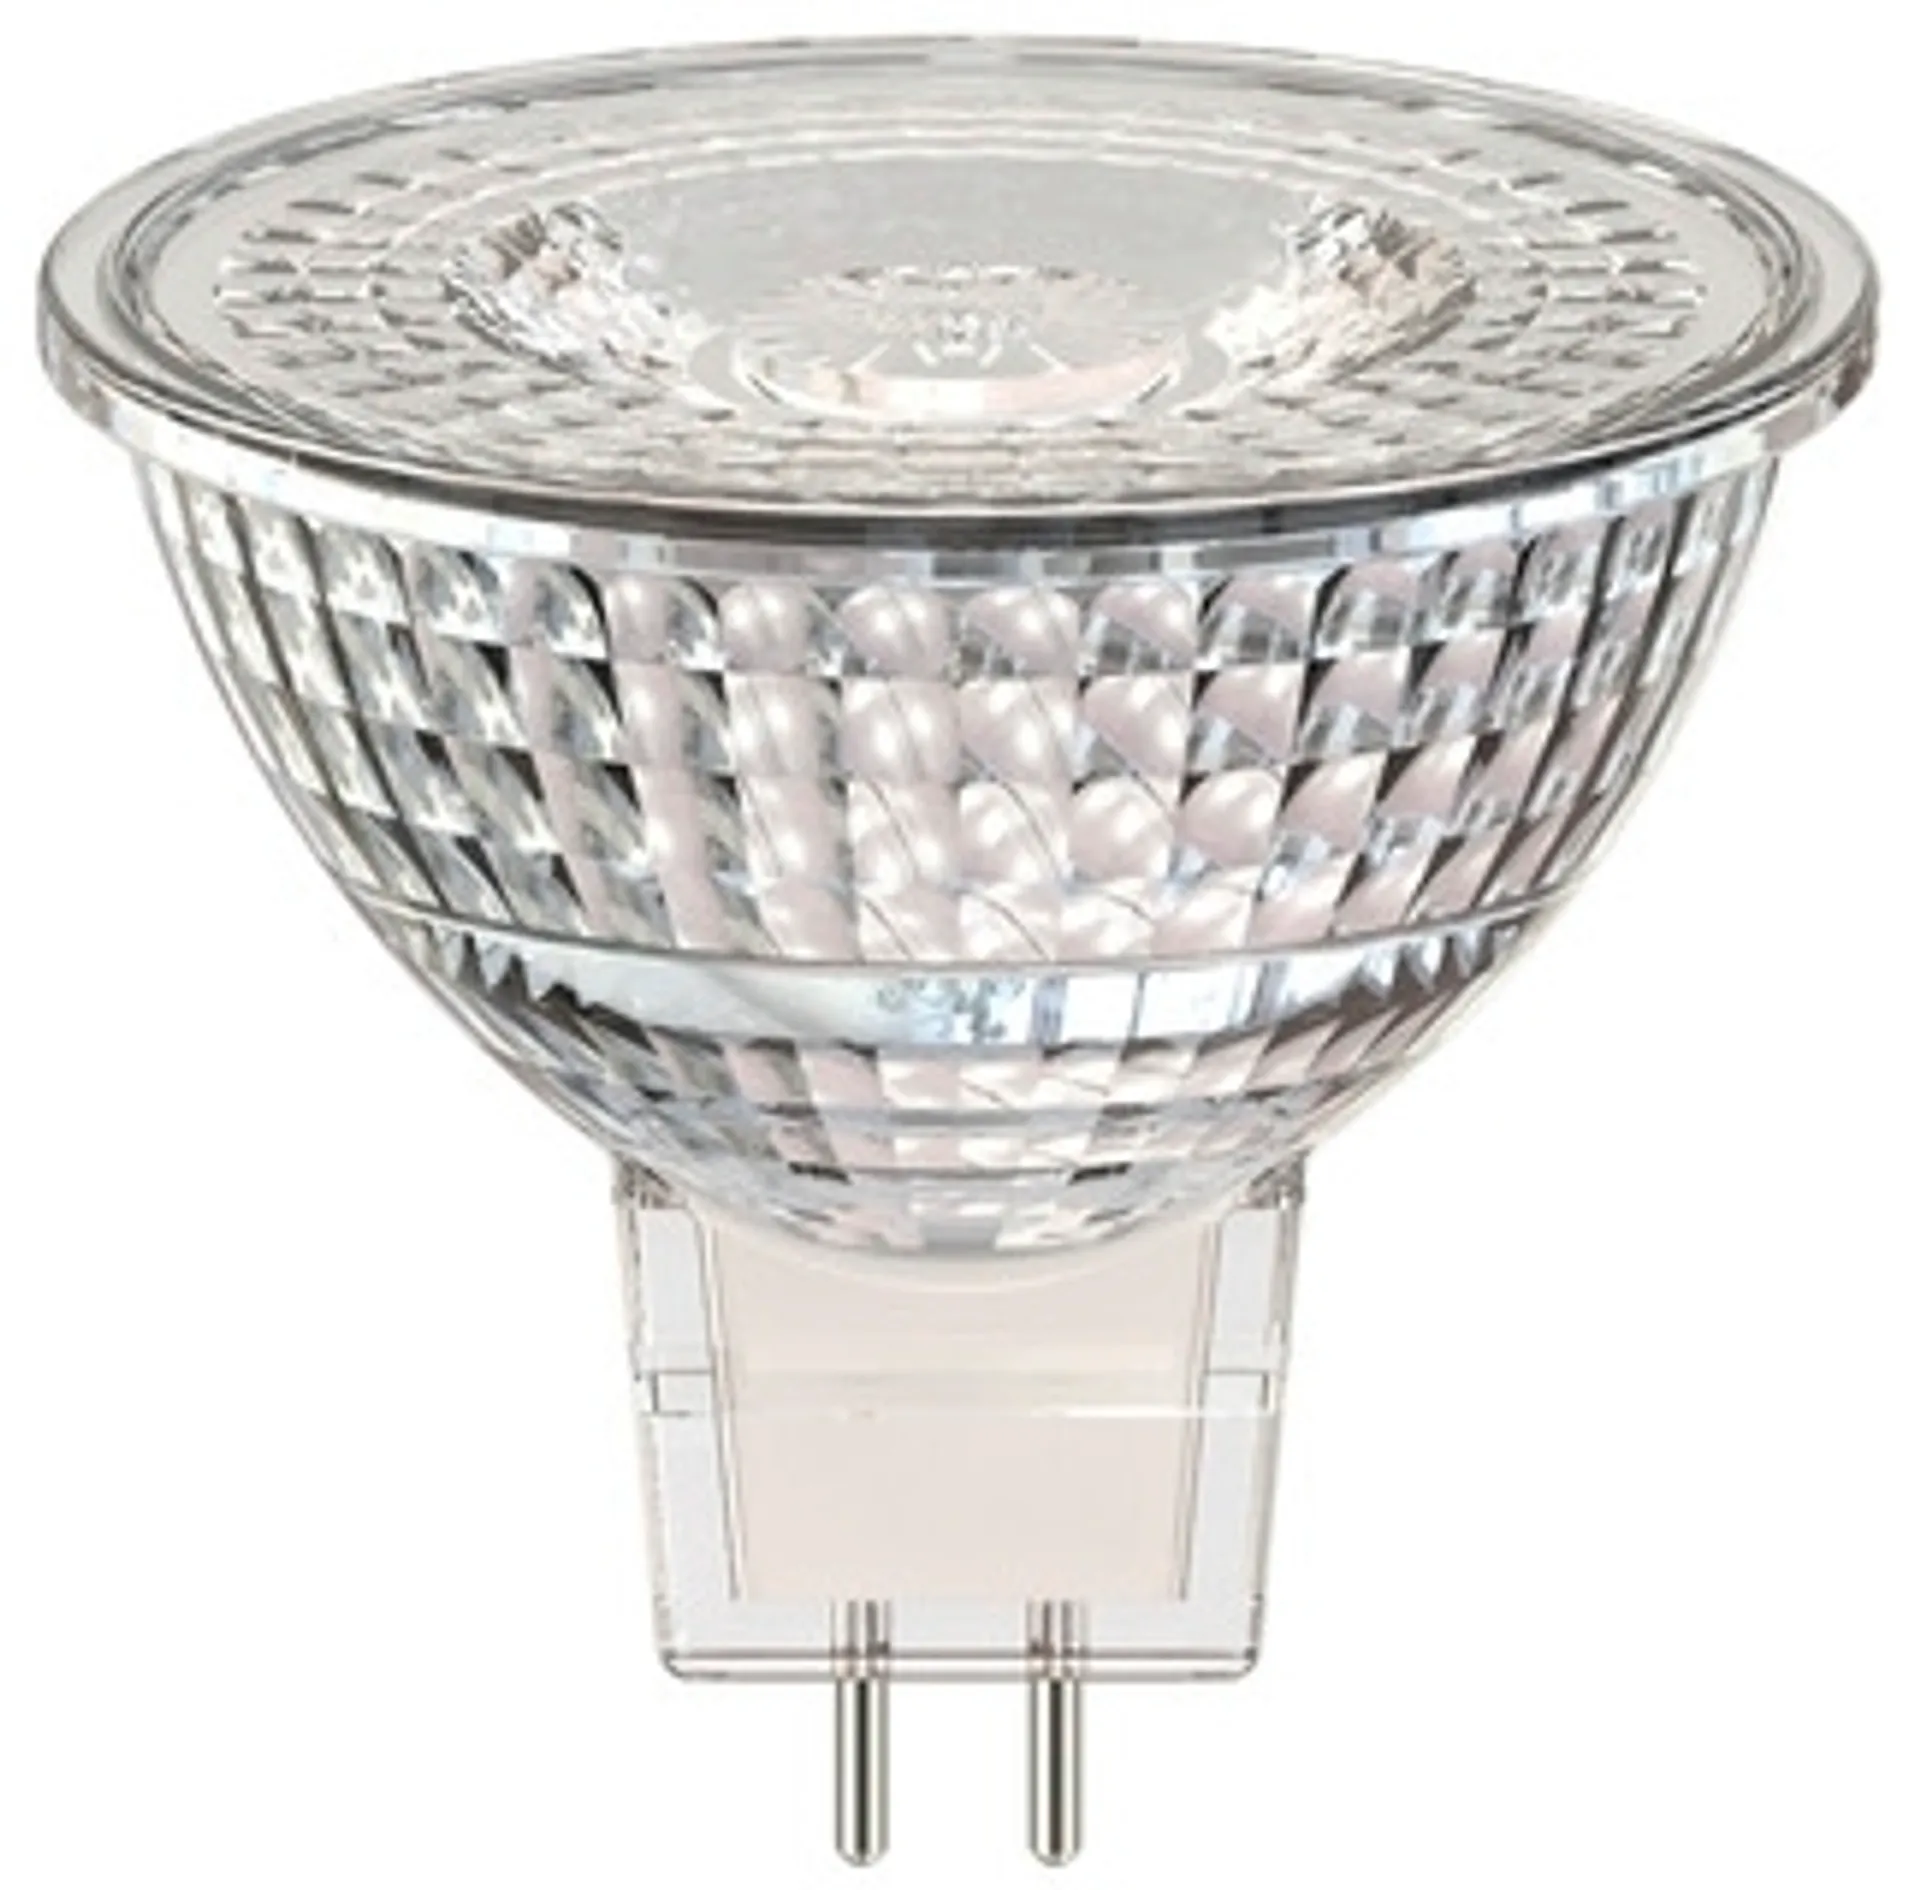 Airam LED kohde MR16 full glas 6,2W GU5.3 12V 520lm/850cd 4000K